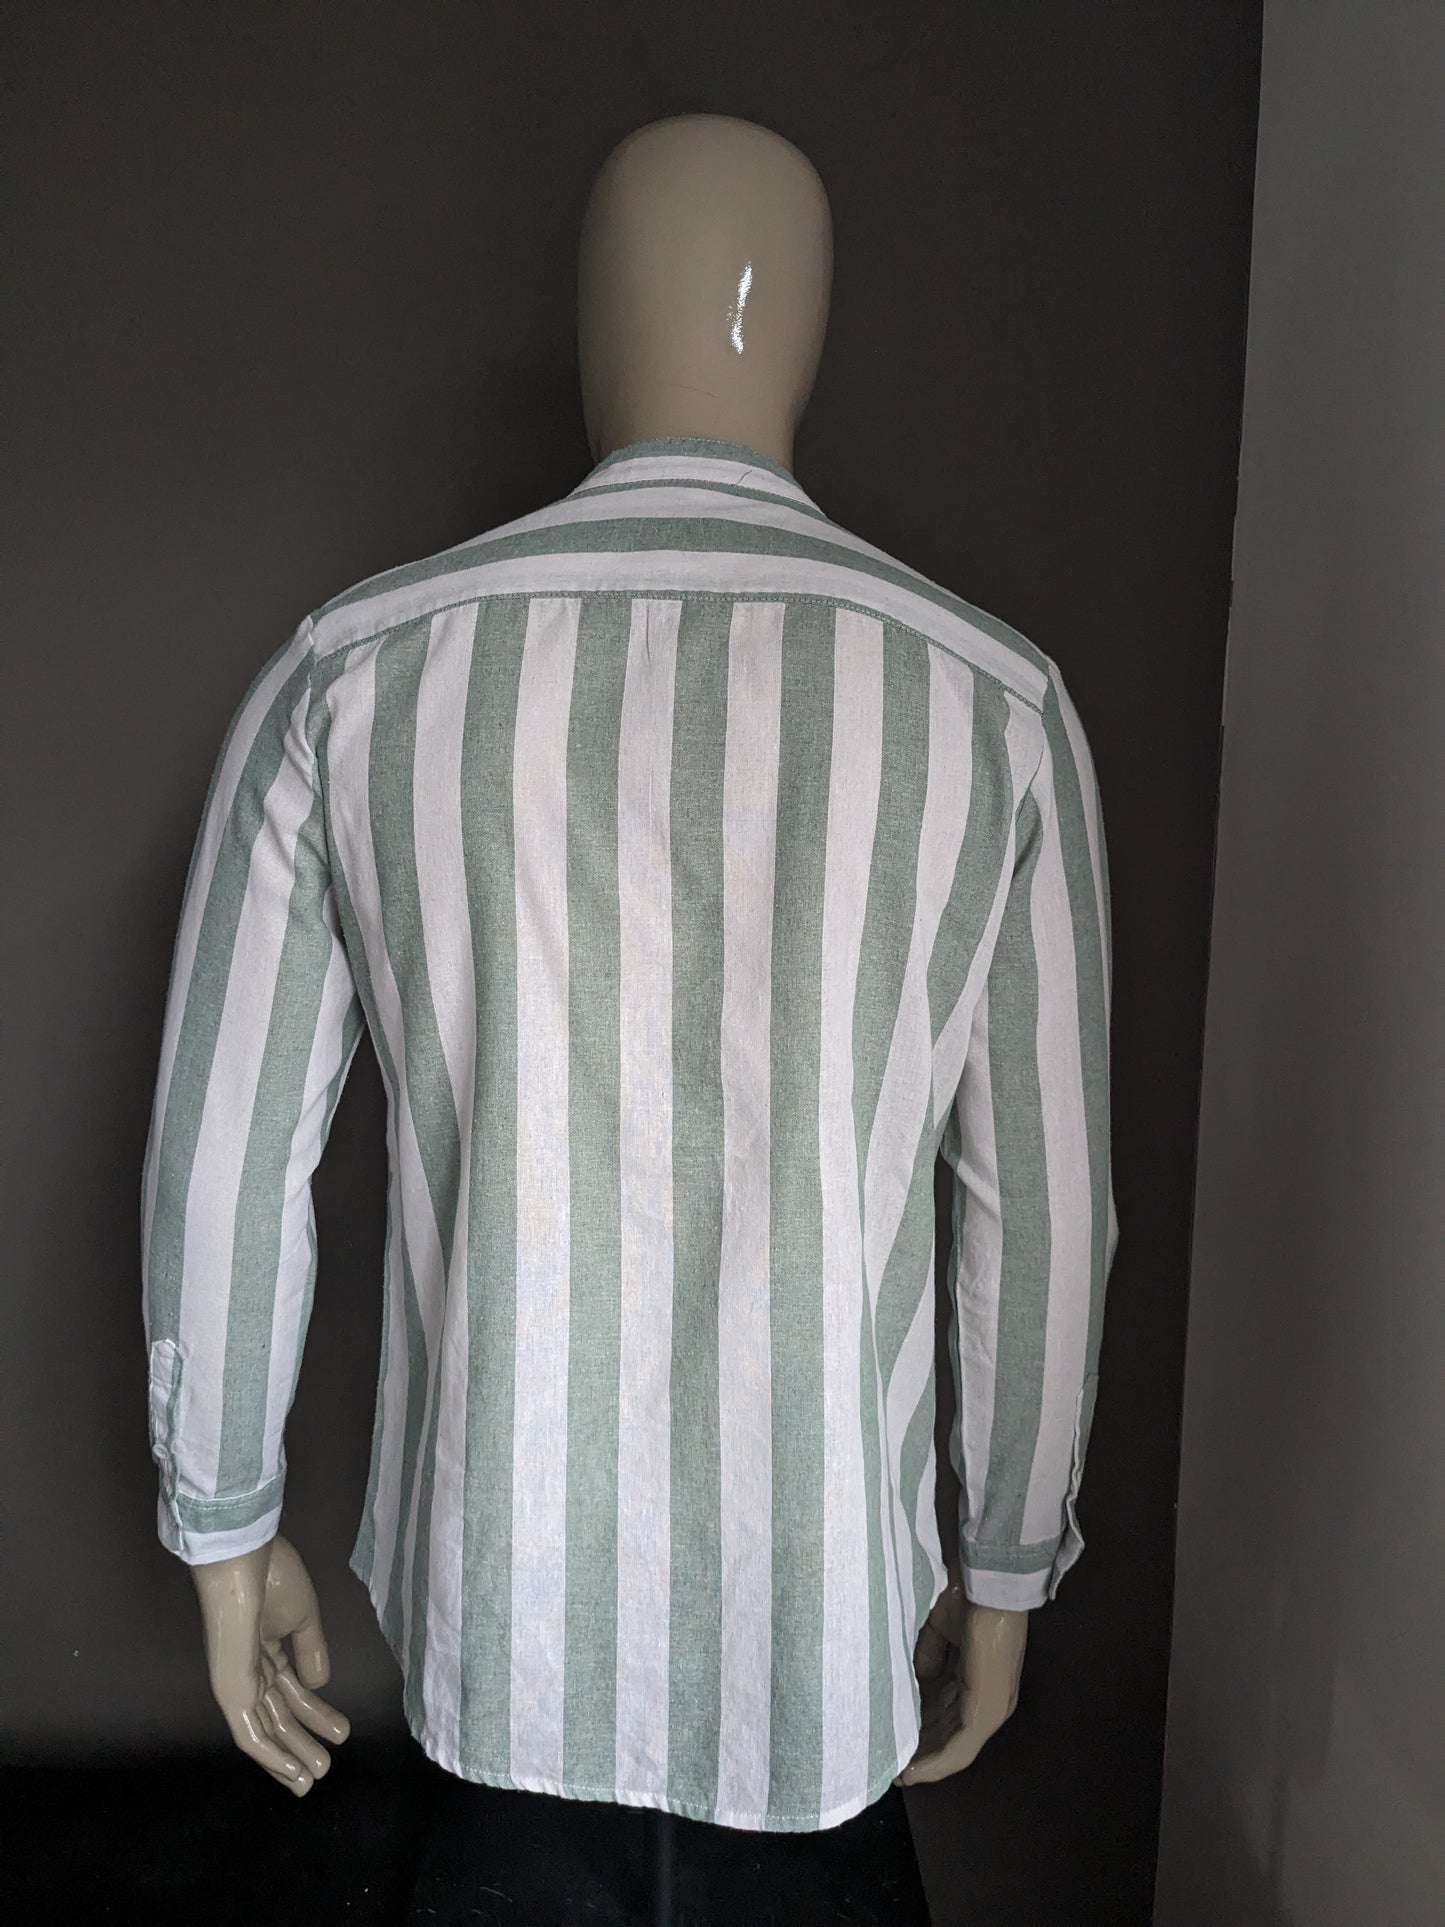 Chemise de chemise sans marque avec agriculteurs / collier surélevé / mao. Green blanc rayé. Taille M / L.